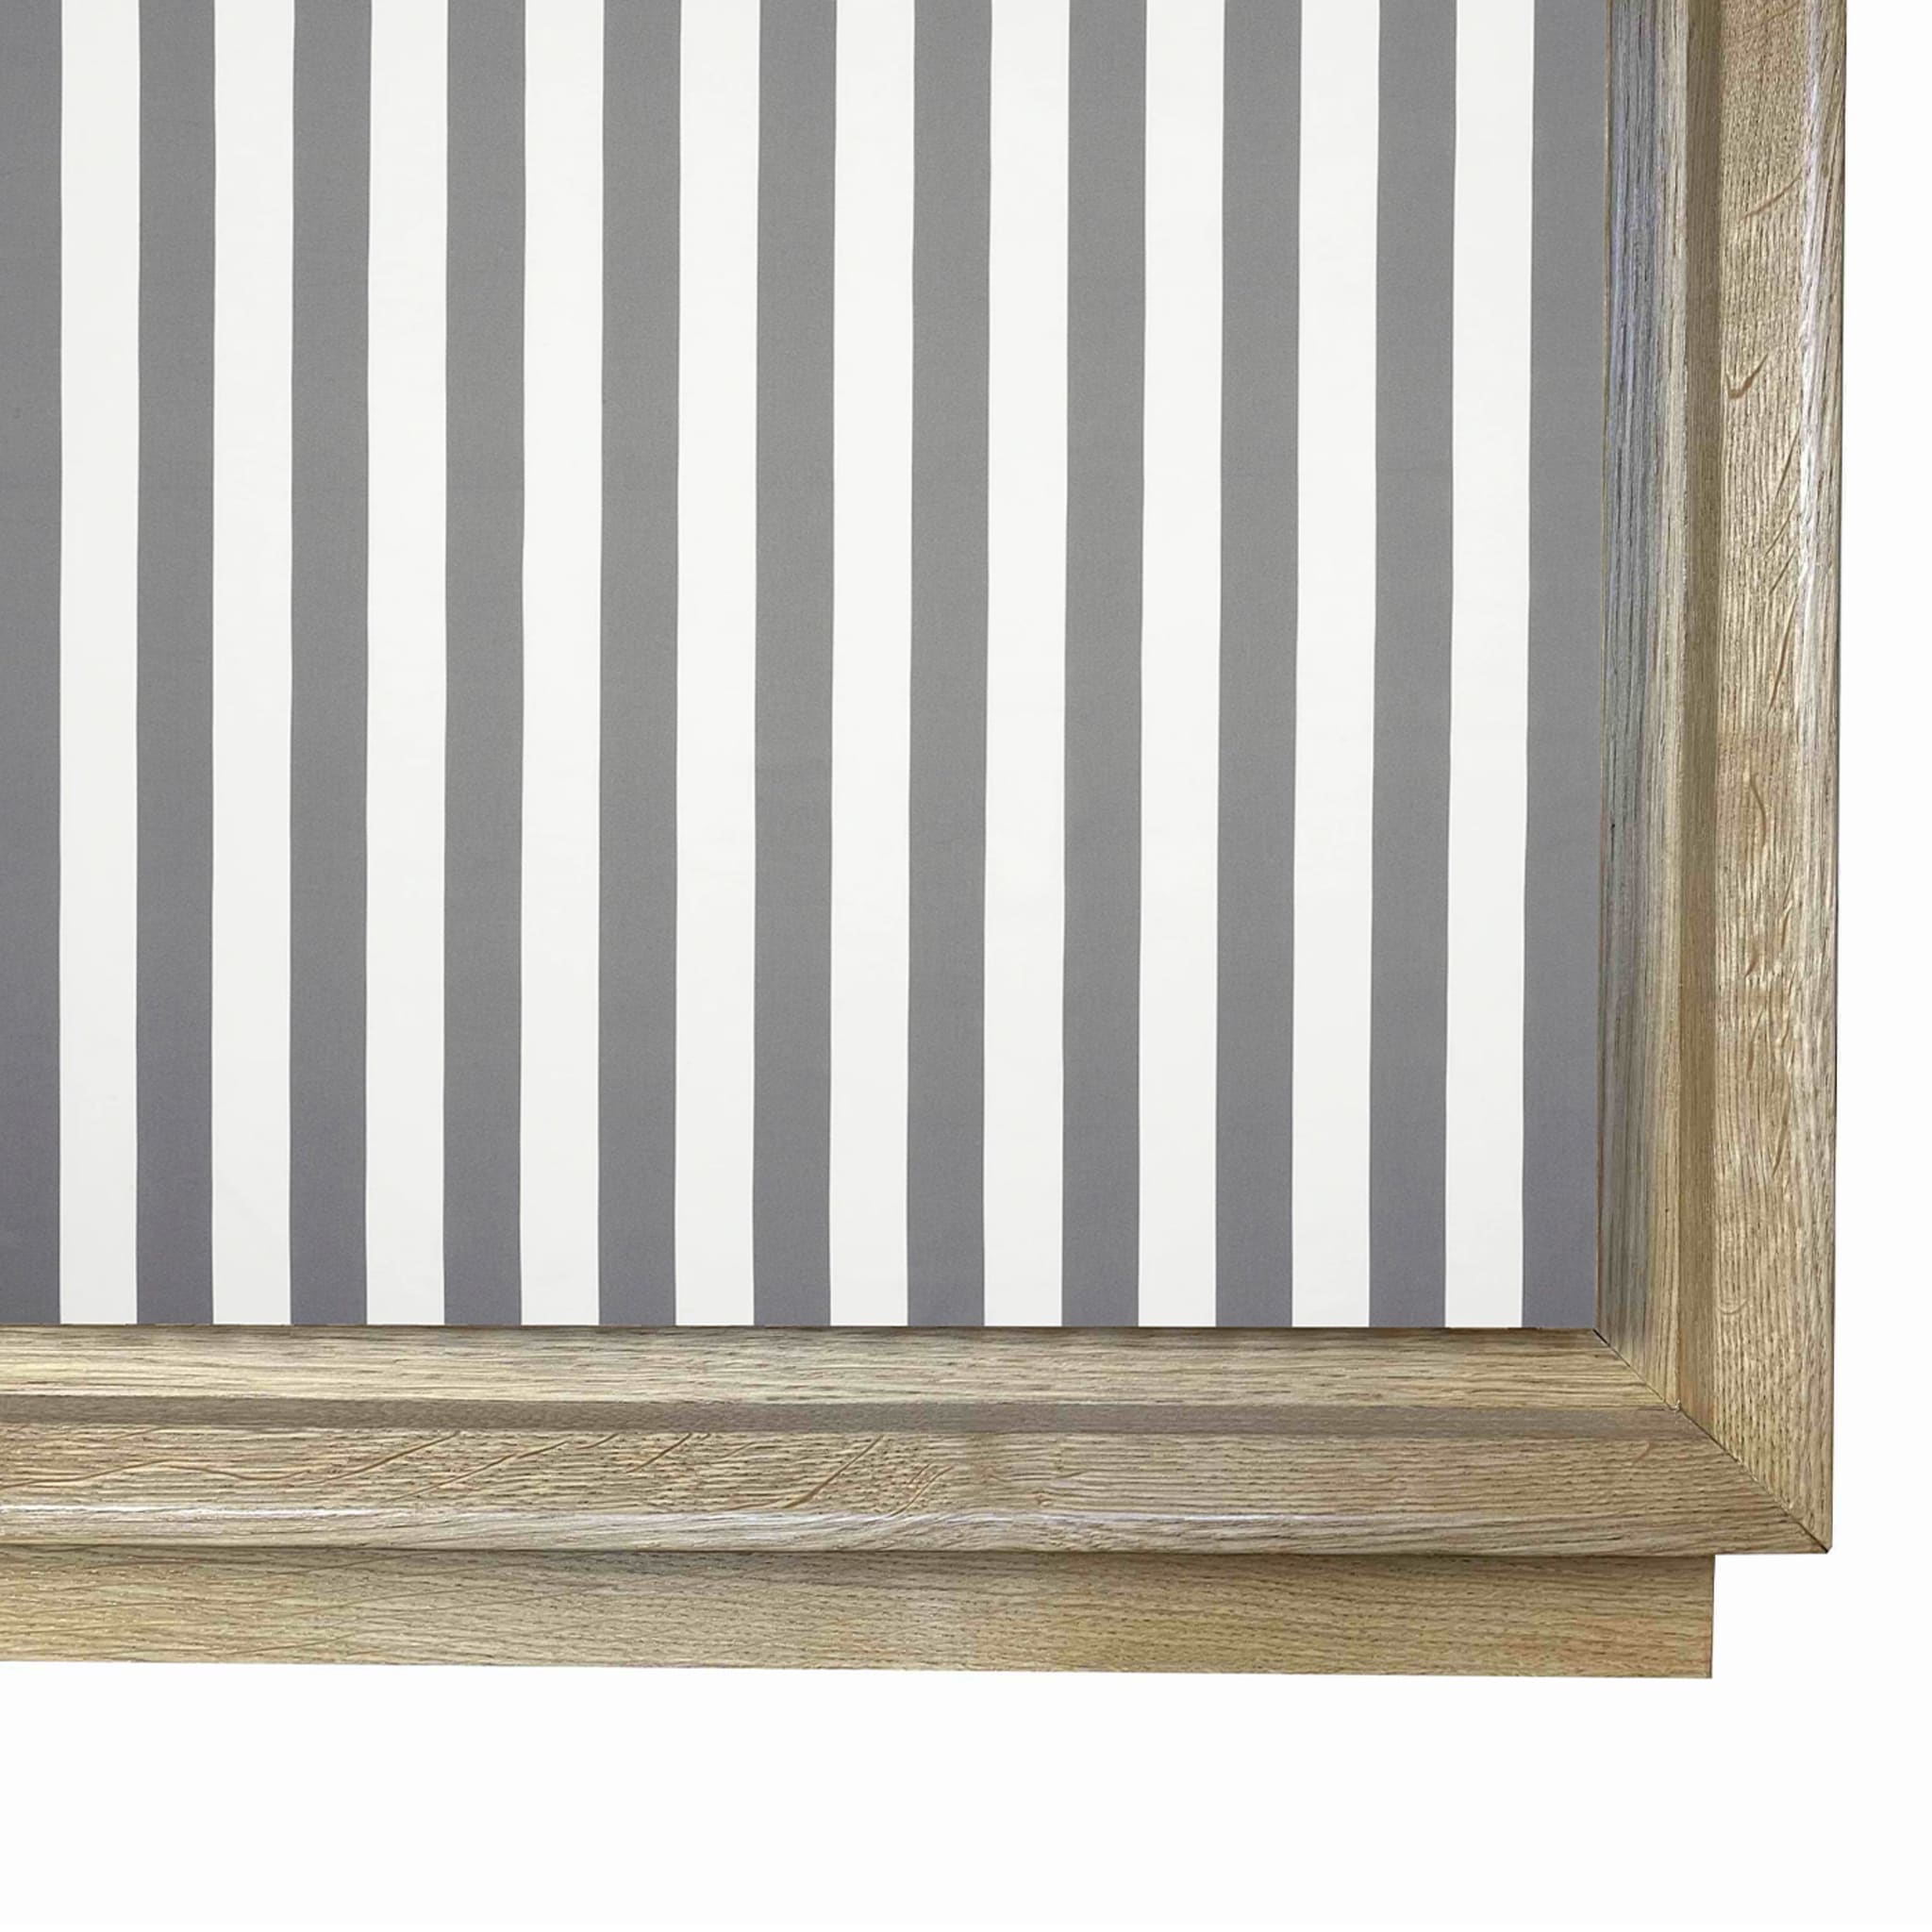 Fuga Strisce Tre 3-türiges grau-weißes Sideboard von M. Meccani - Alternative Ansicht 1